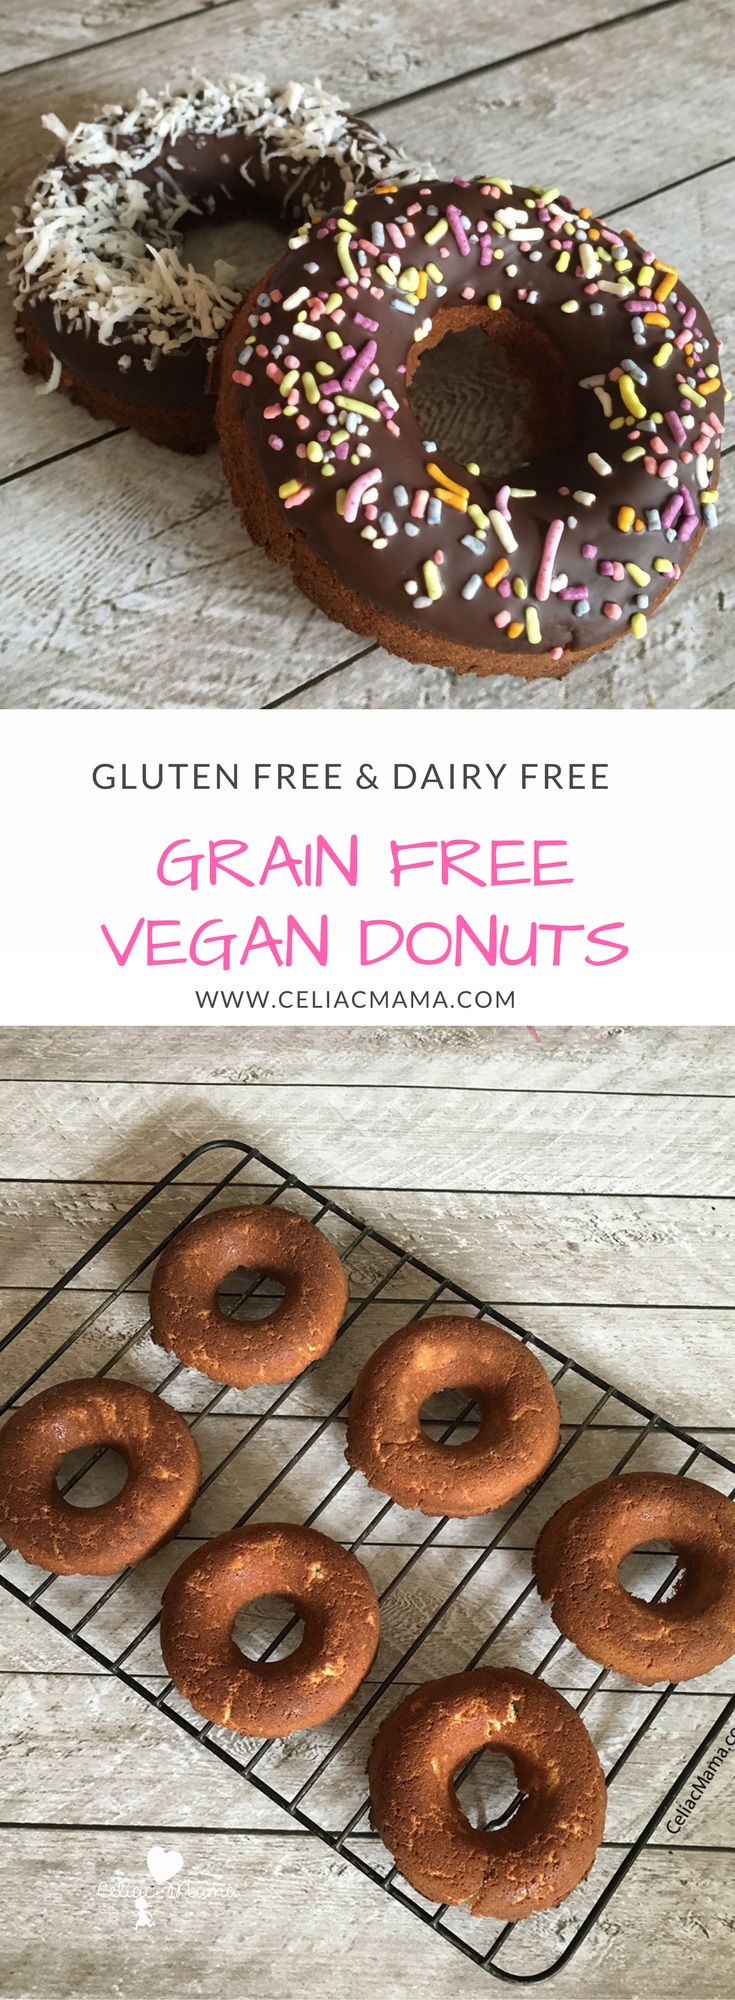 grain-free-vegan-donuts-pinterest